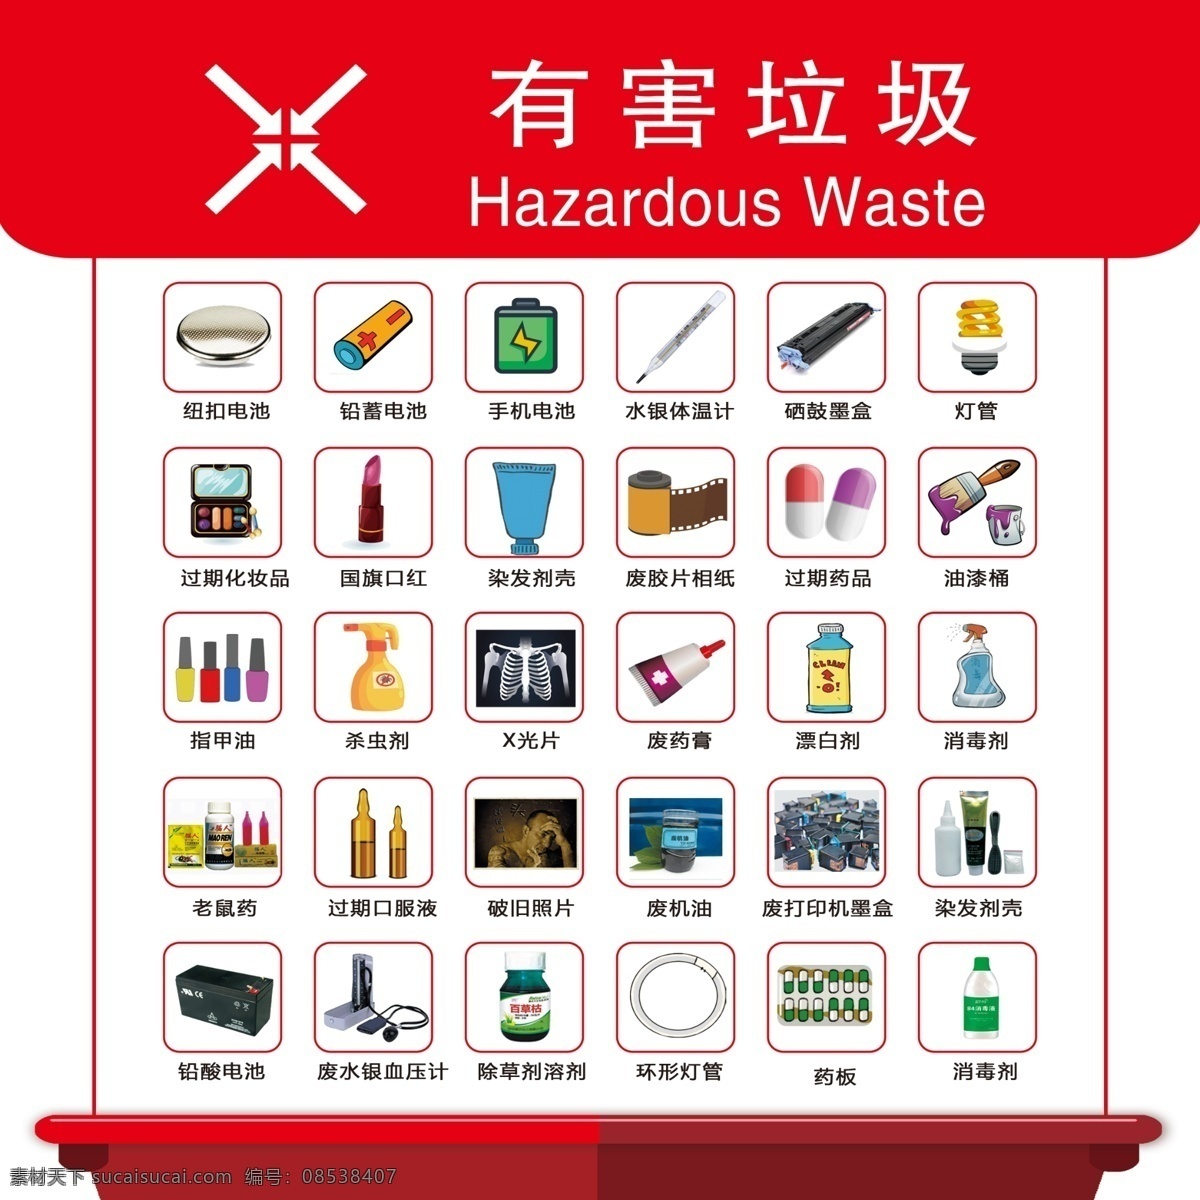 有害垃圾图片 北京市 垃圾 分类 有害垃圾 分类表